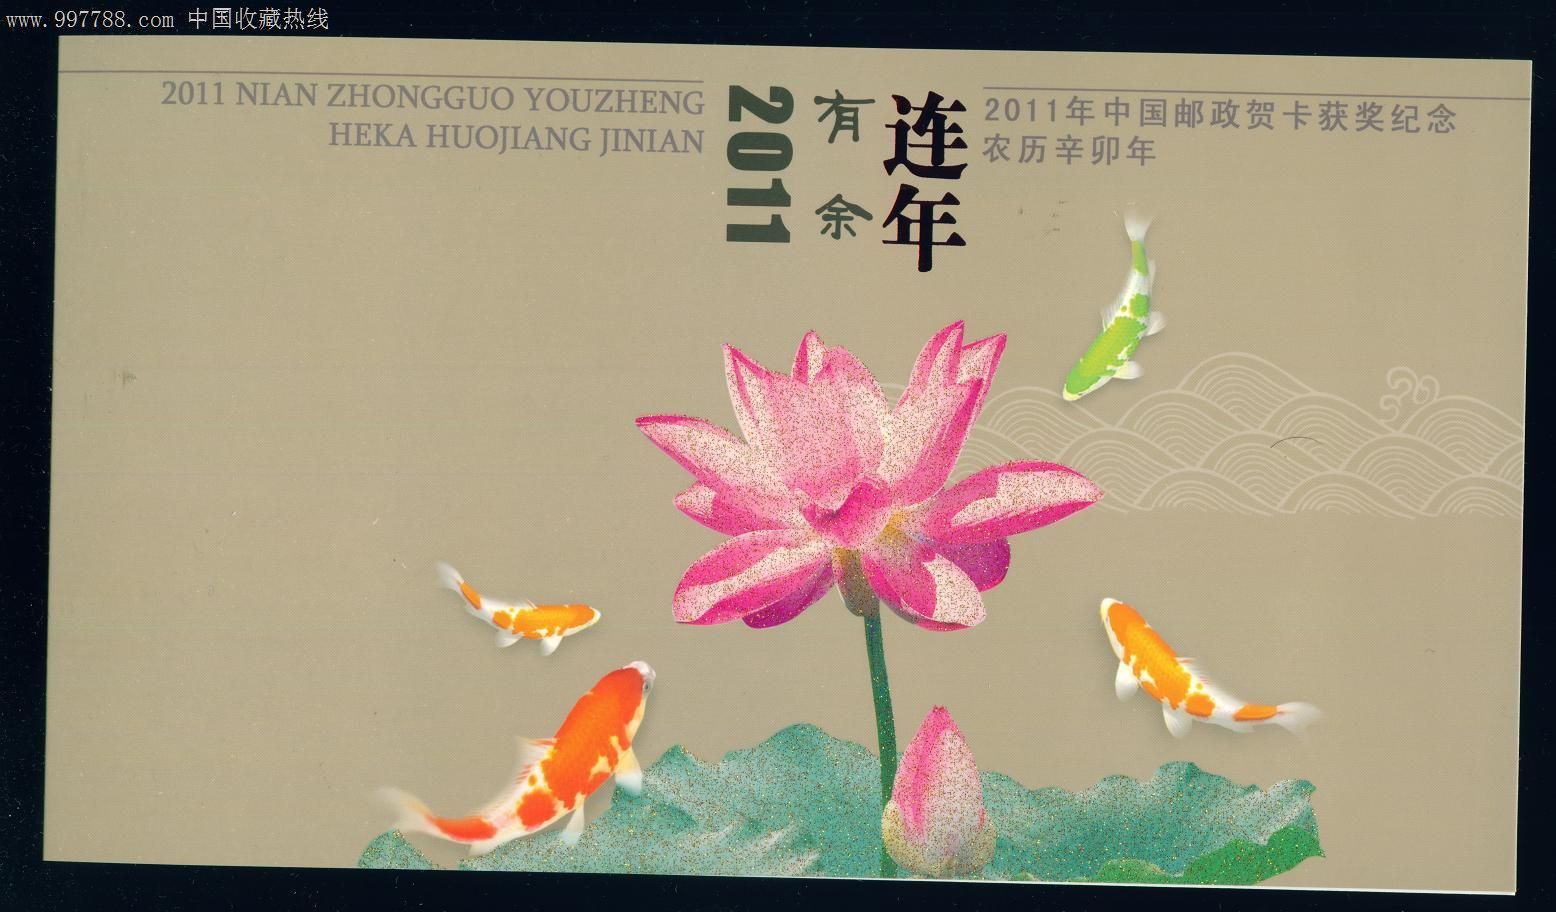 2011年中国邮政贺卡获奖纪念凤翔木版年画幸